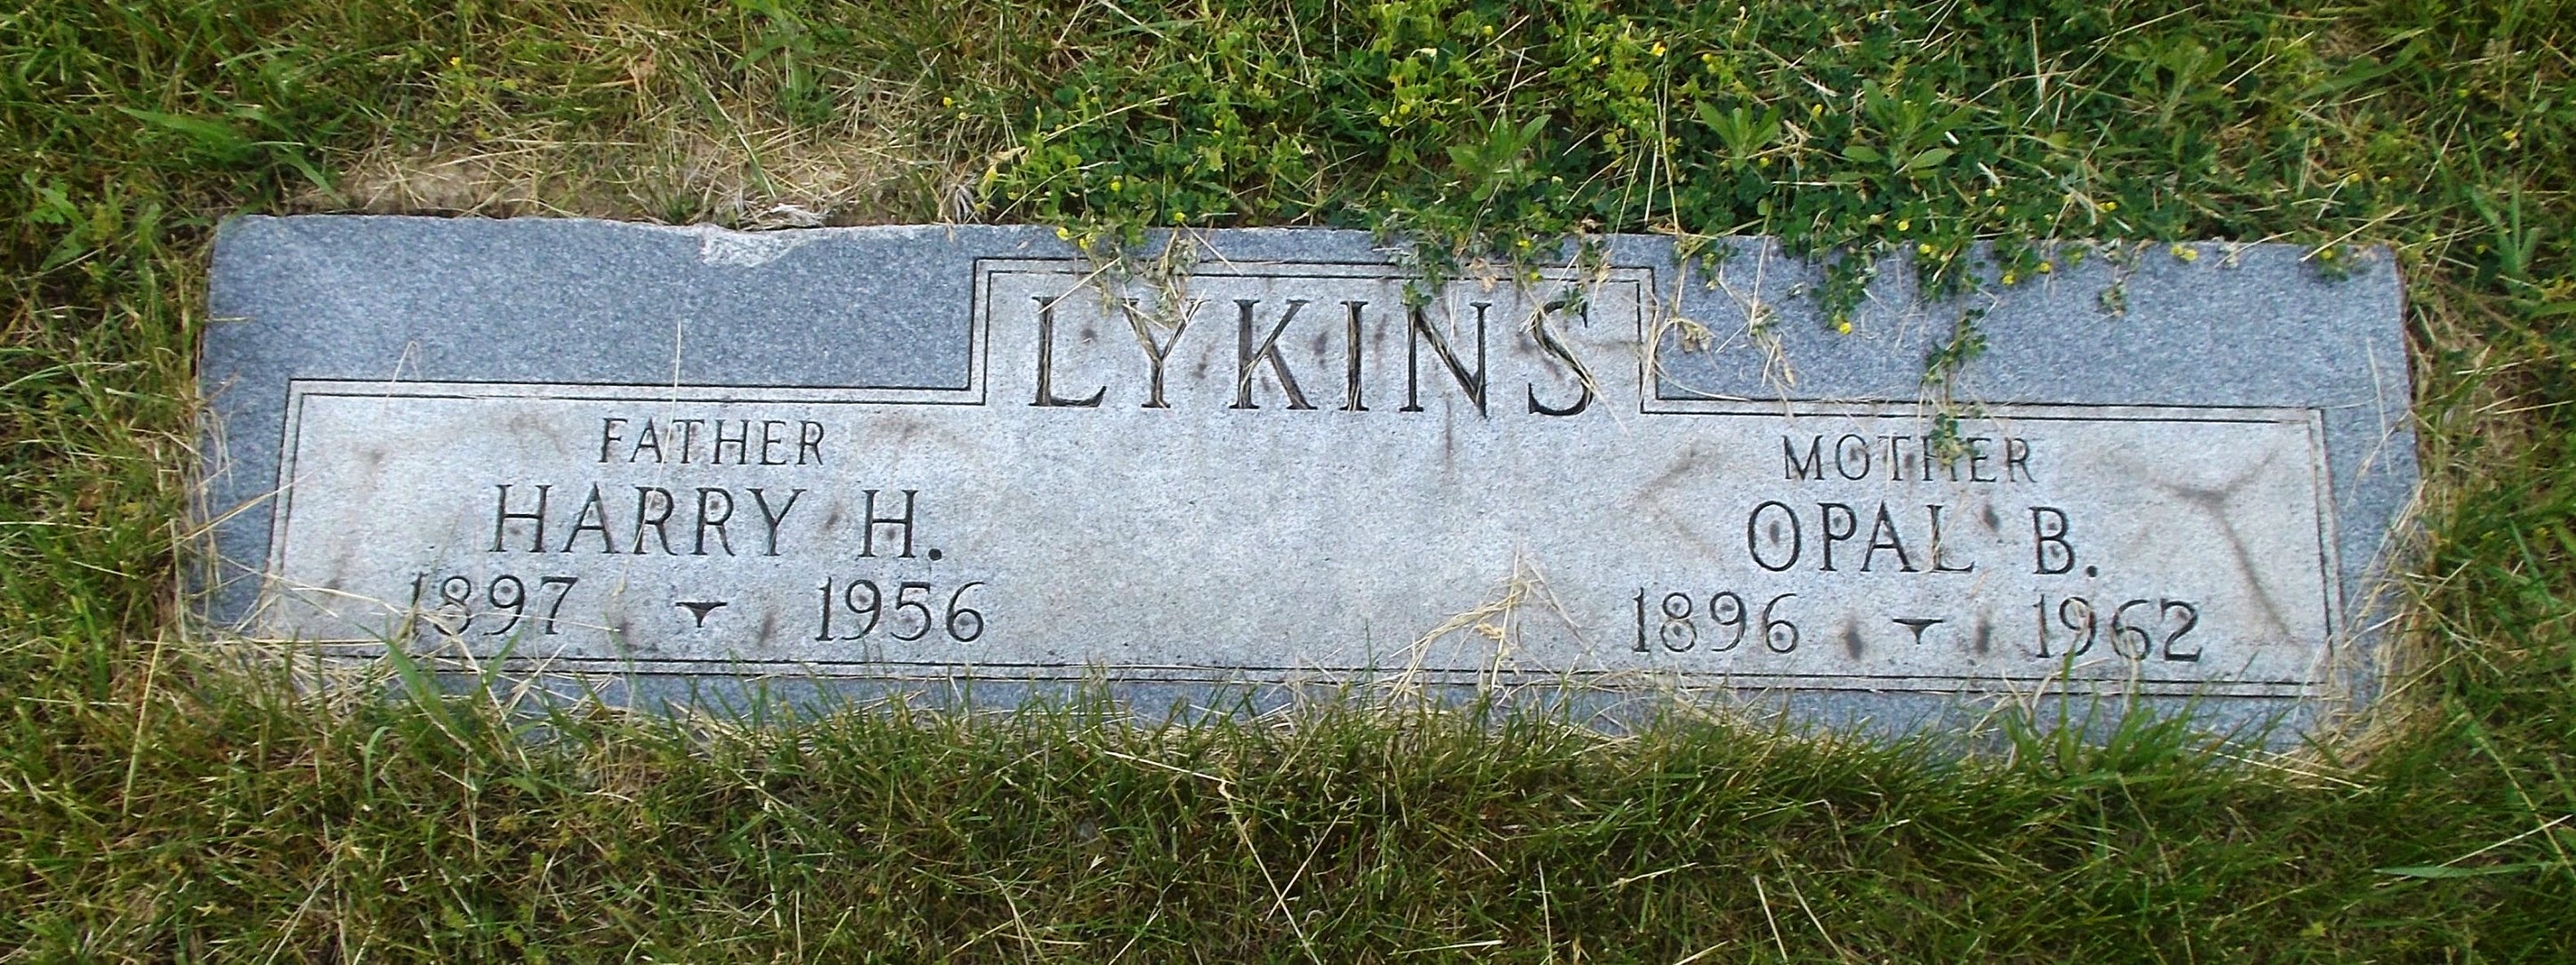 Harry H Lykins